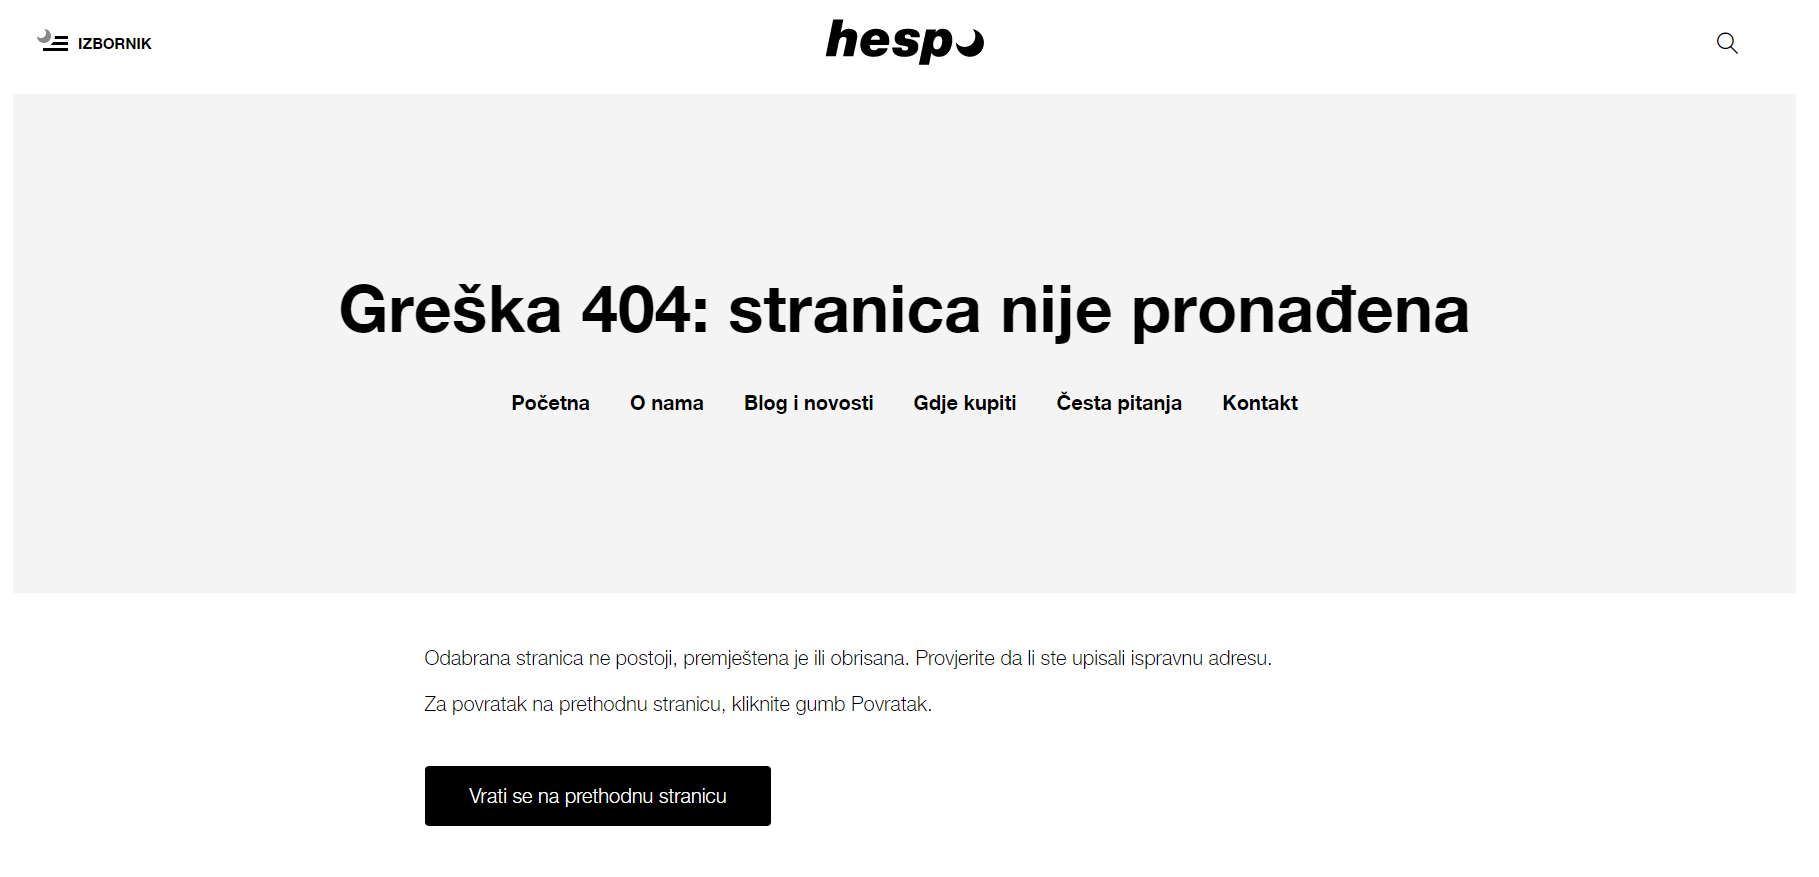 Stranica 404 Hespo